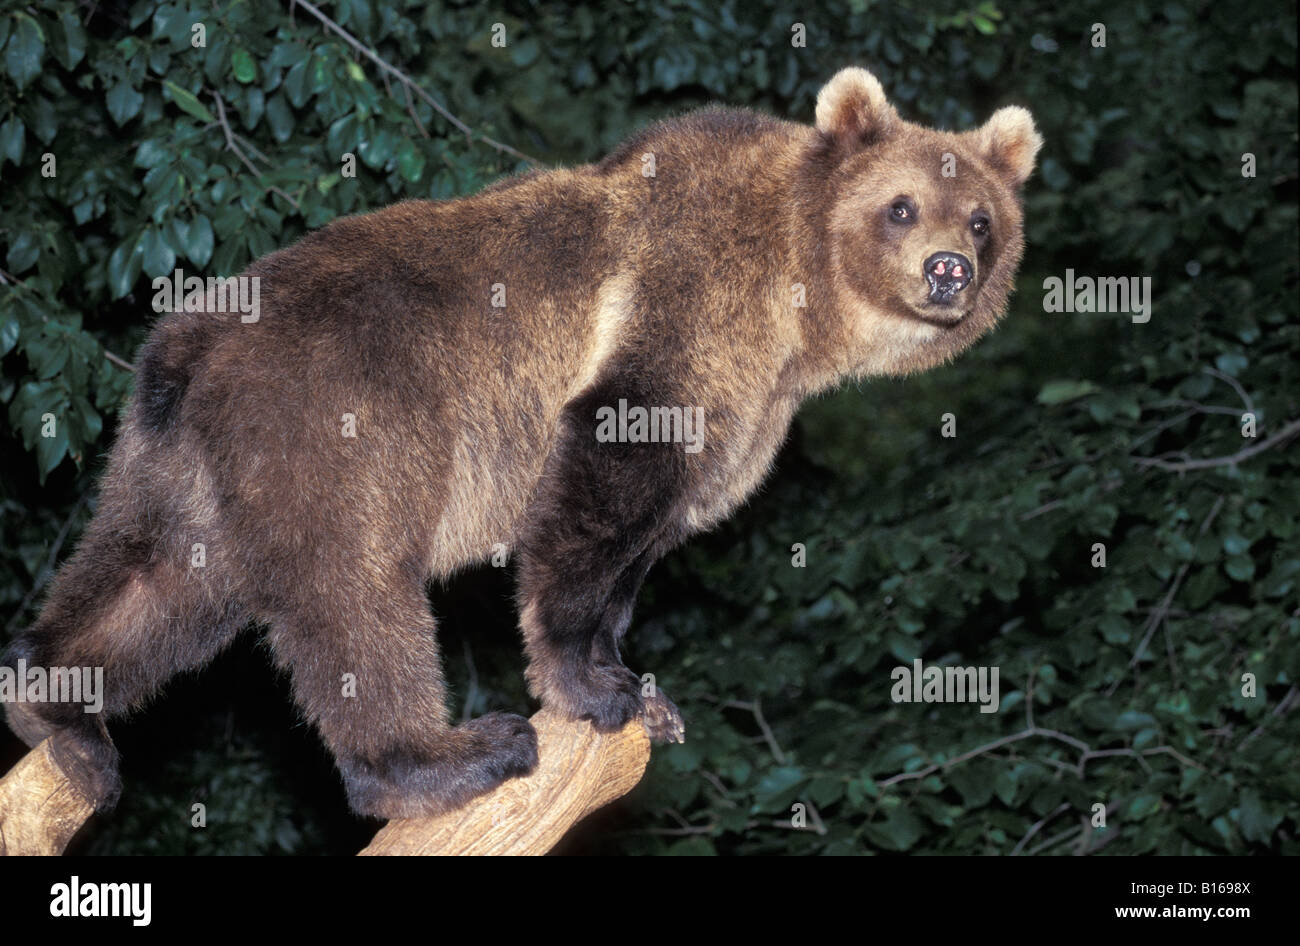 Unsere Brun Braun Bär Ursus Arctos kletternden Baum Erwachsene Erwachsene Tier Arctos Bär Bären kaltblütige braun Carnivora Fleischfresser Stockfoto